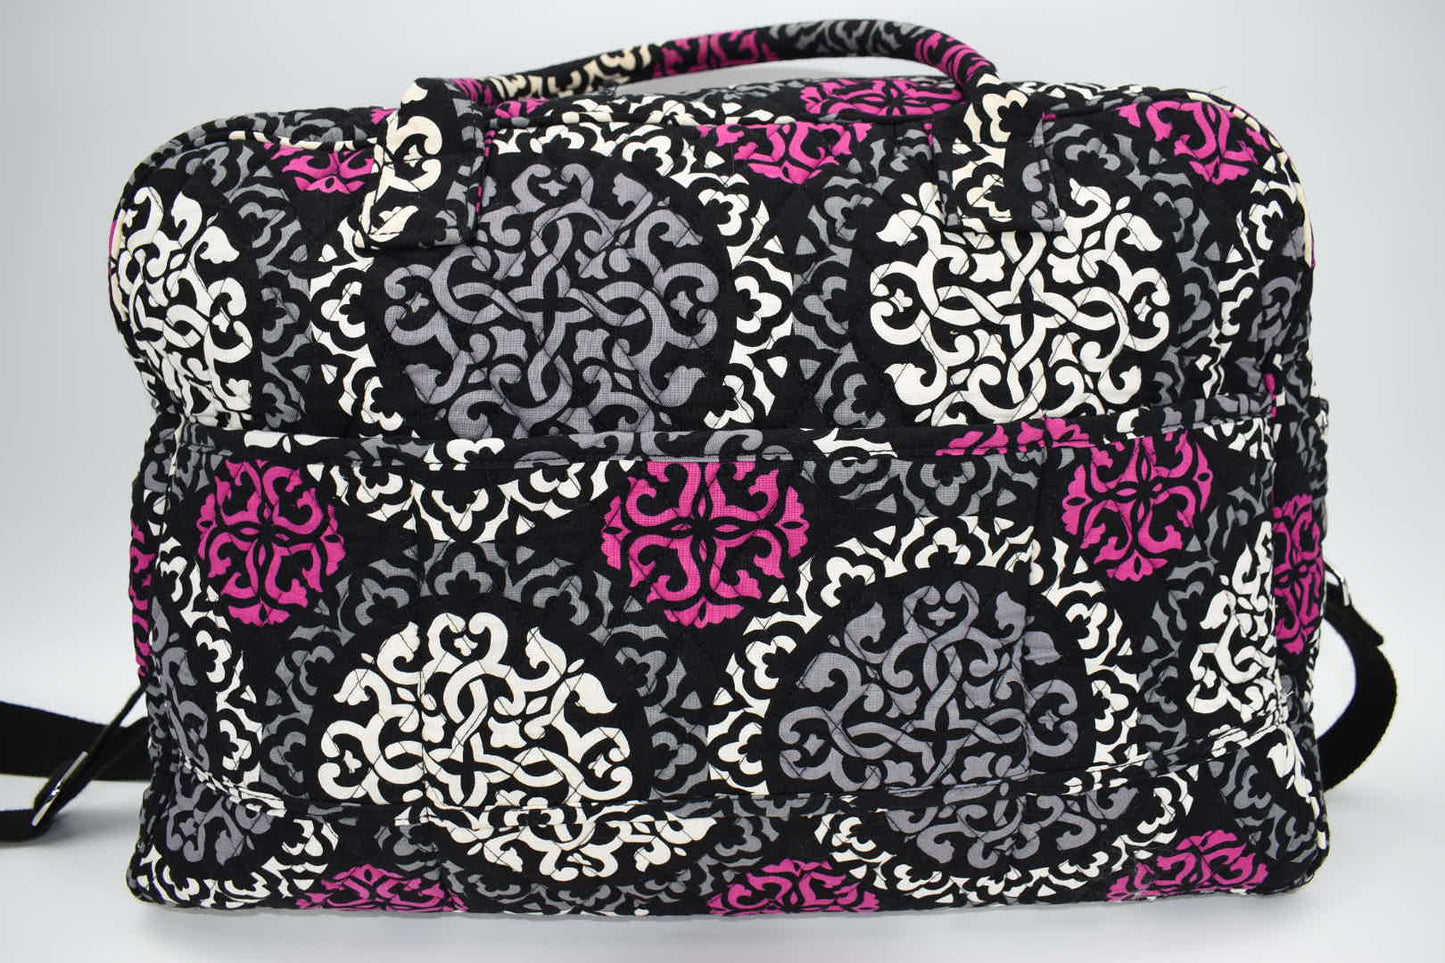 Vera Bradley Weekender Travel Bag in Canterberry Magenta Pattern